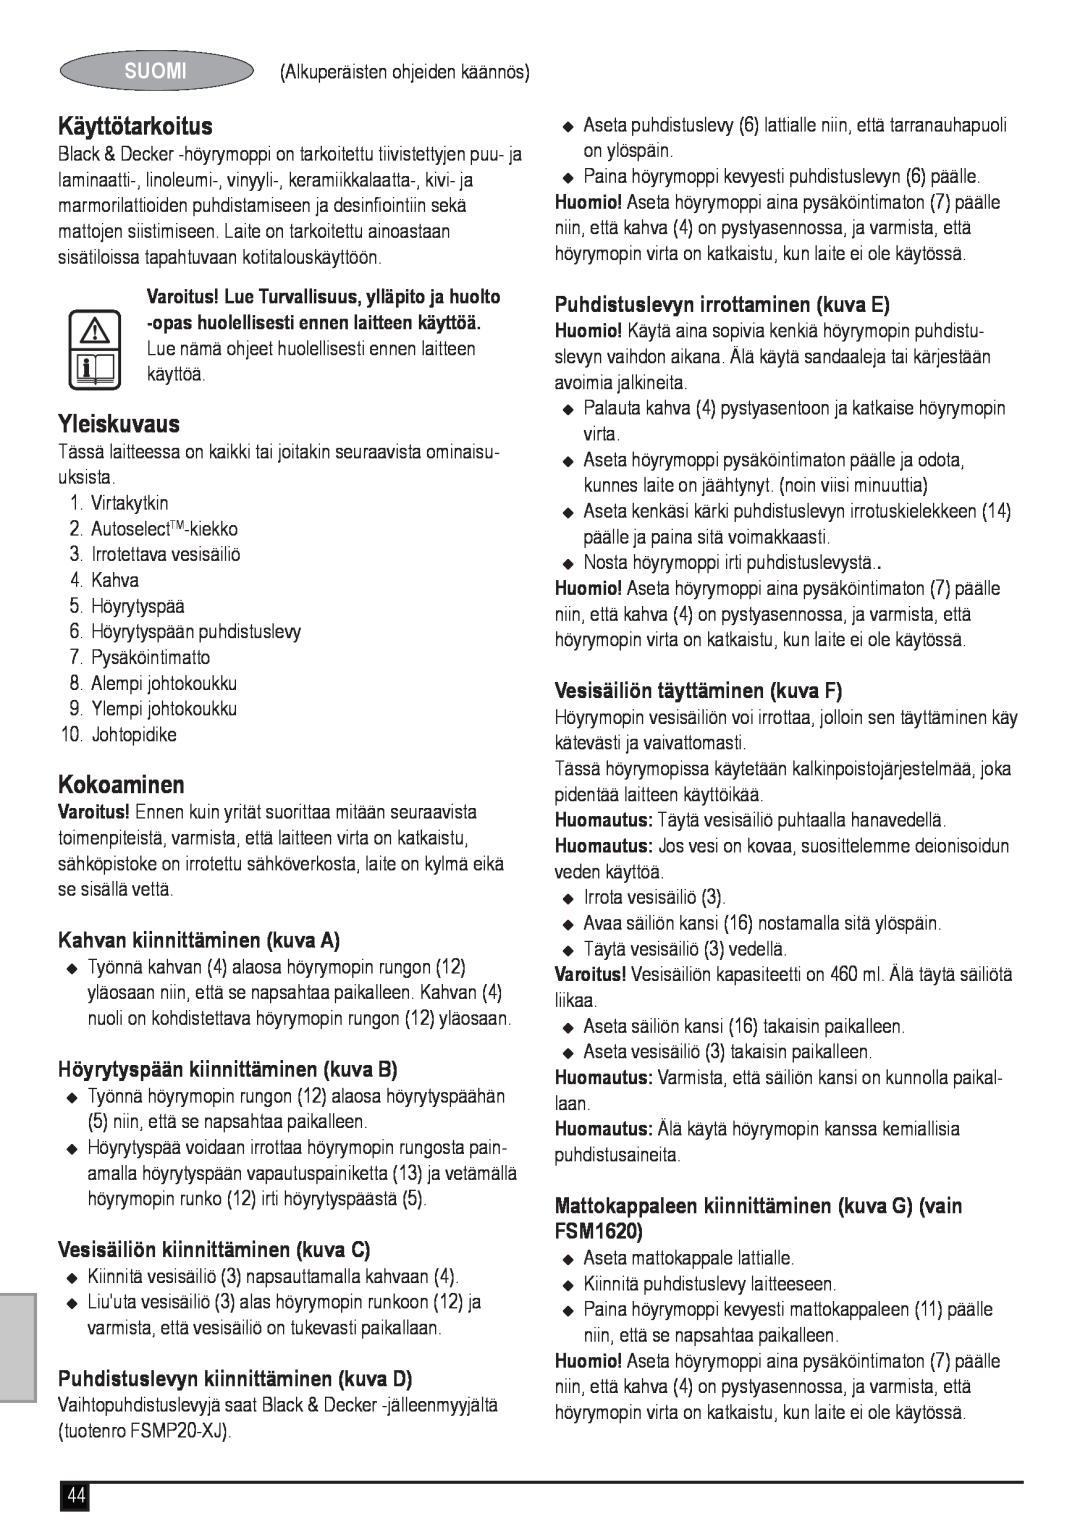 Black & Decker FSM1620 manual Käyttötarkoitus, Yleiskuvaus, Kokoaminen, Suomi, Kahvan kiinnittäminen kuva A 